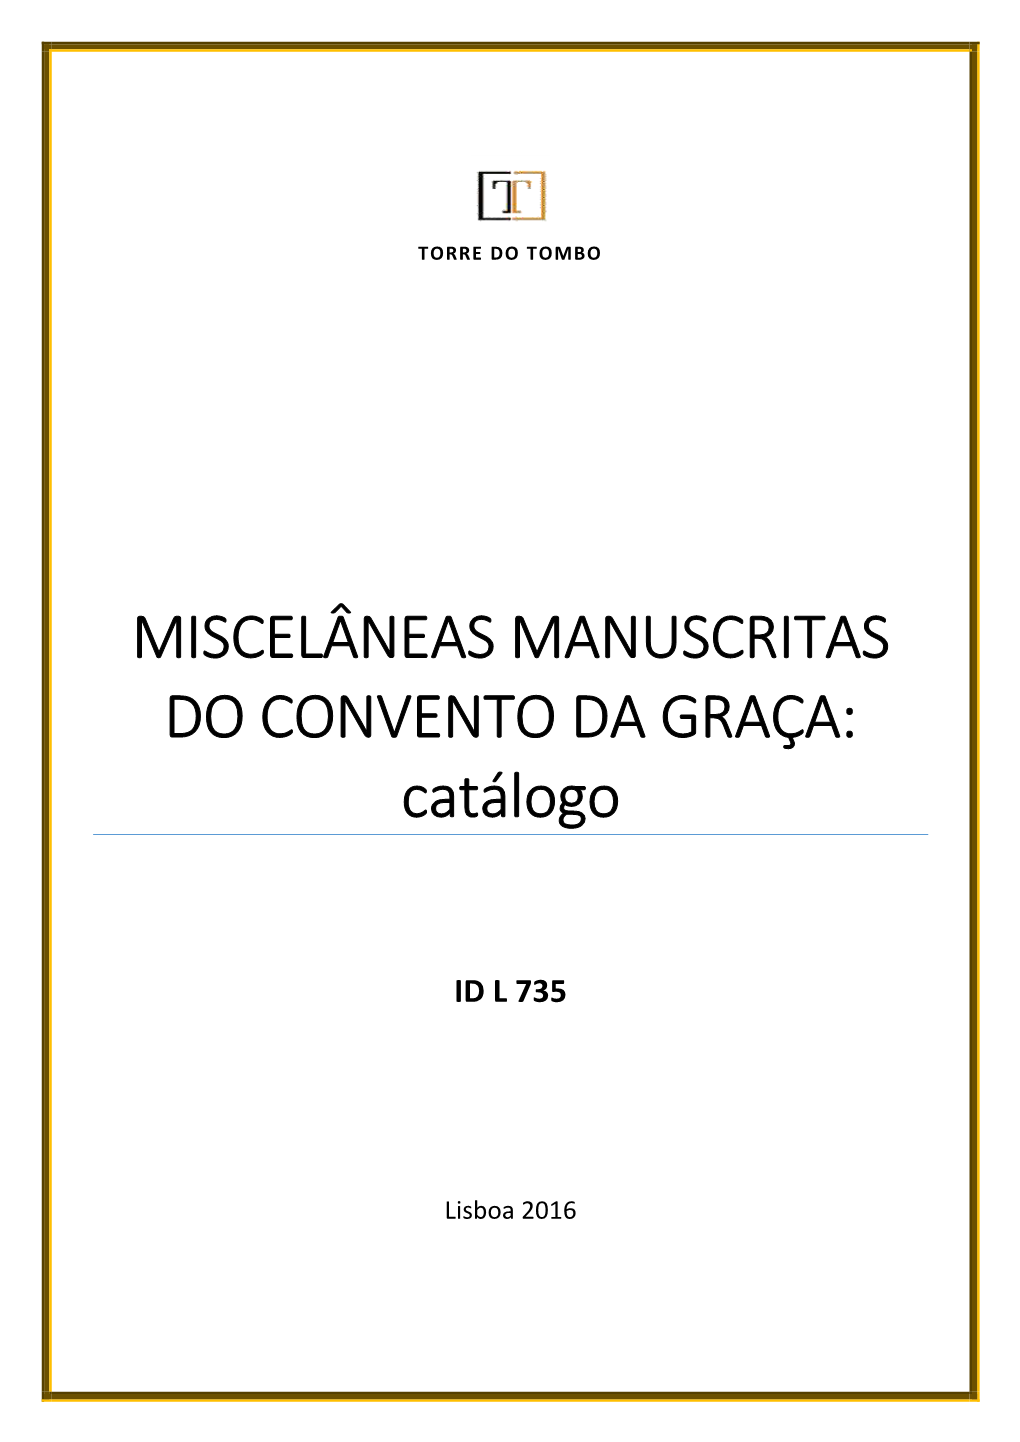 MISCELÂNEAS MANUSCRITAS DO CONVENTO DA GRAÇA: Catálogo